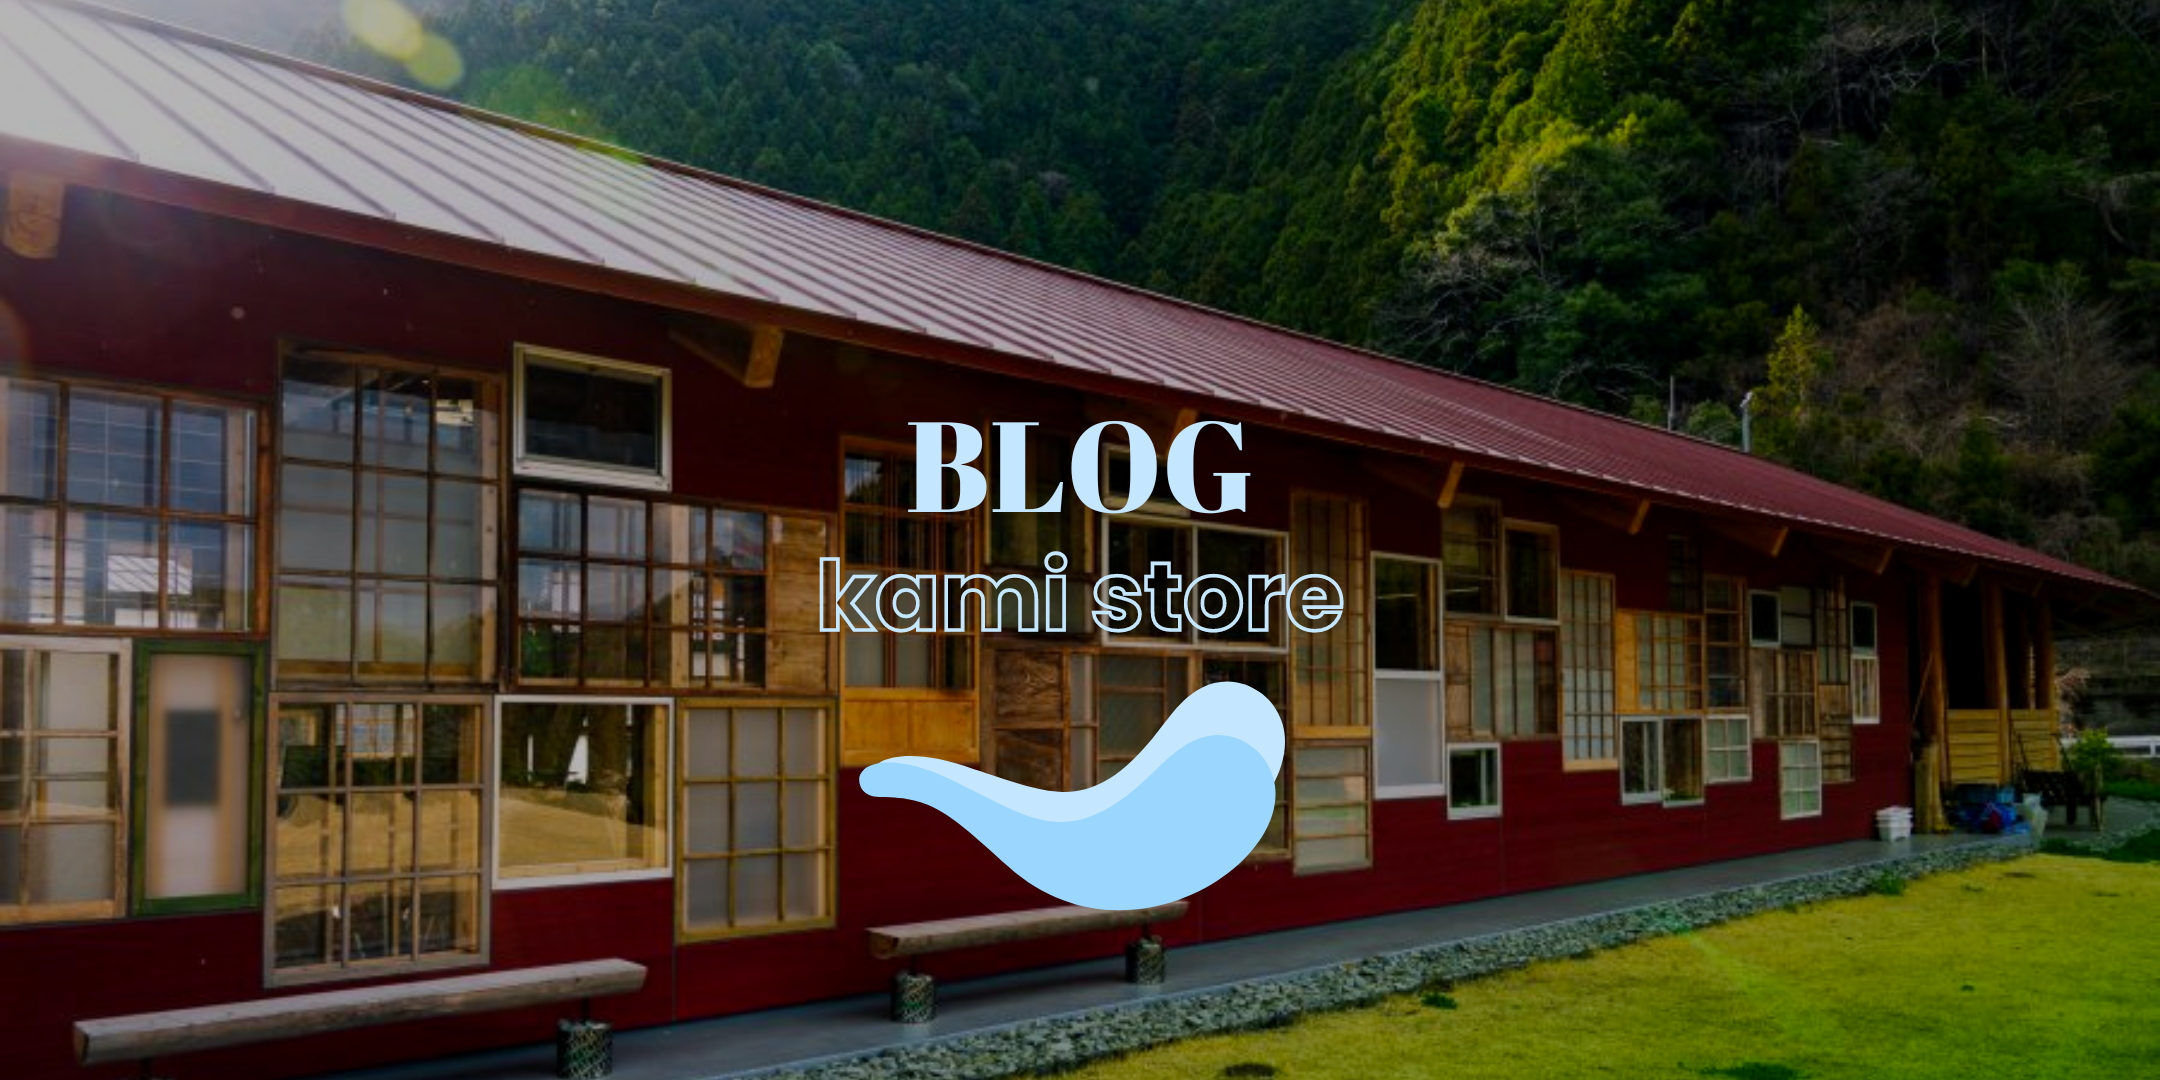 The Road to Kamikatsu : le blog pour les boutiques engagées pour la planète